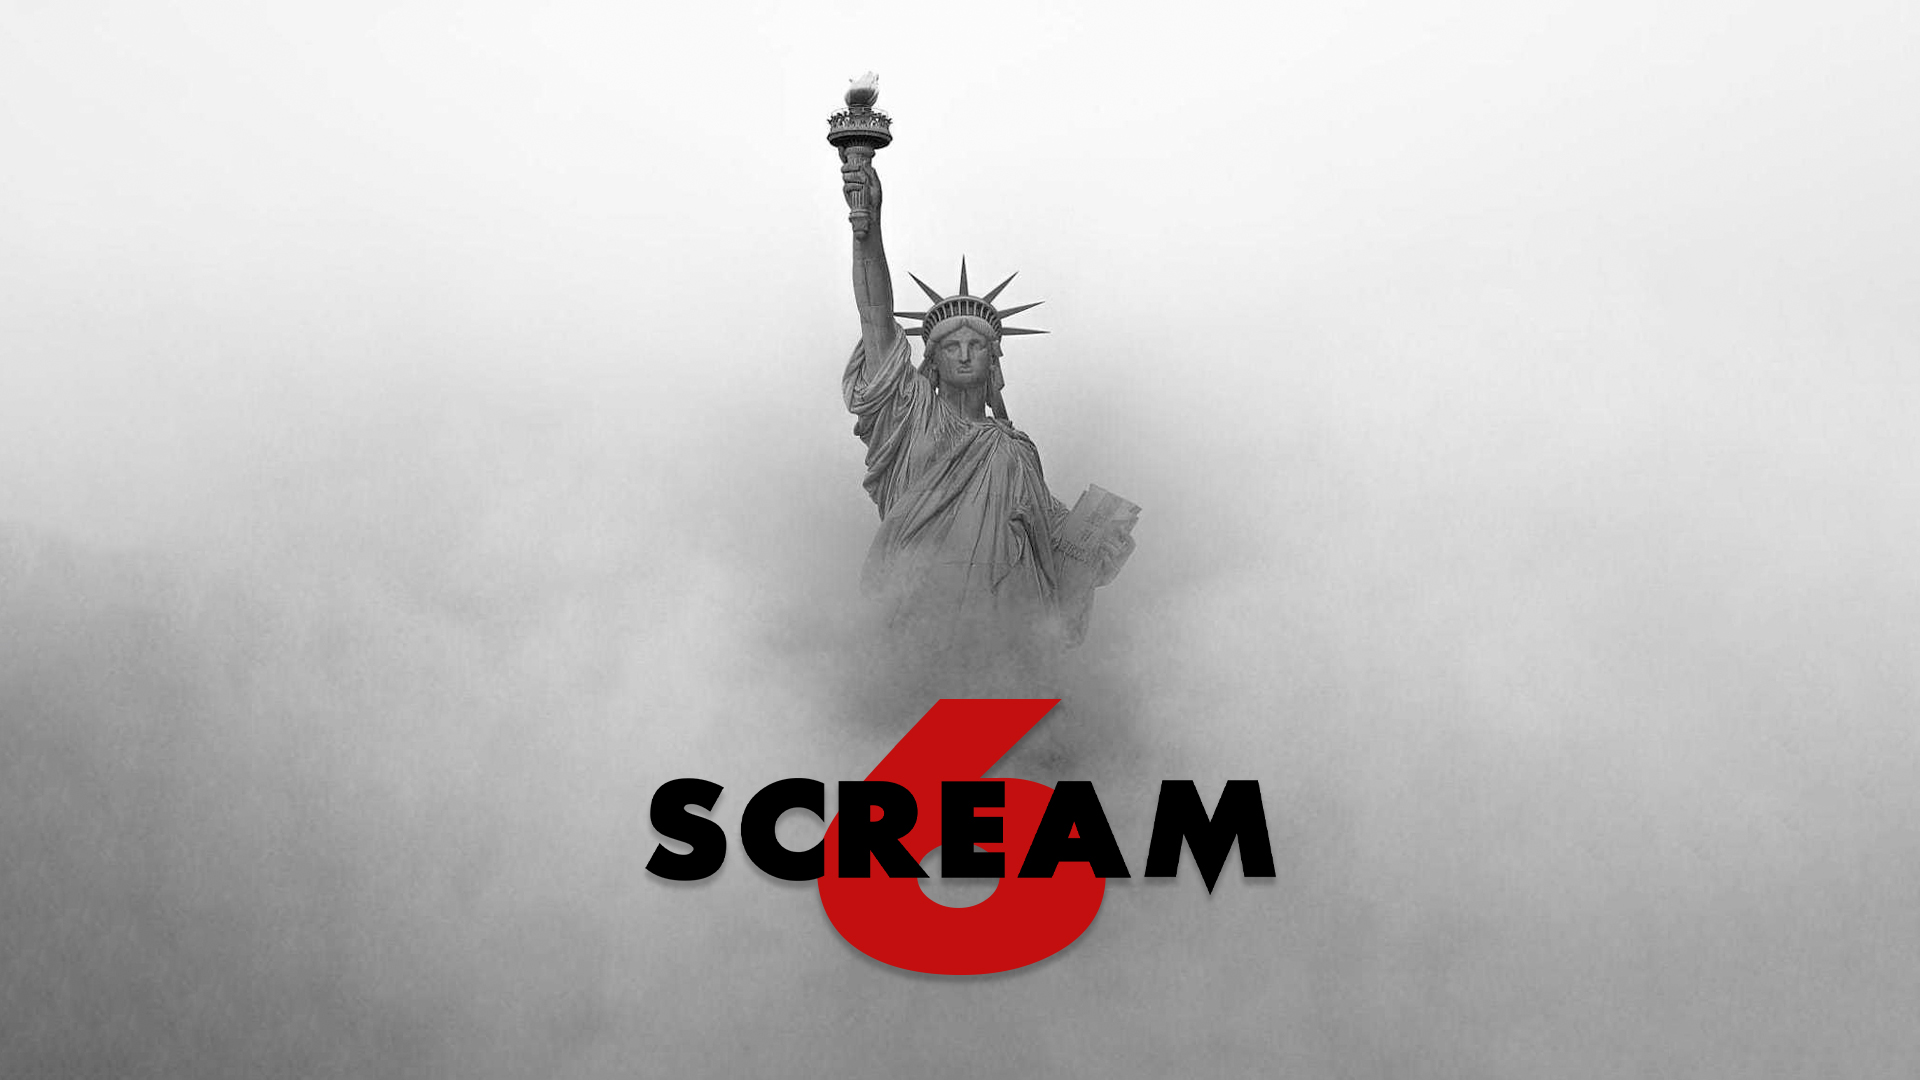 Scream 6 Now On Paramount Plus & Digital #scream #scream6 #screamvi